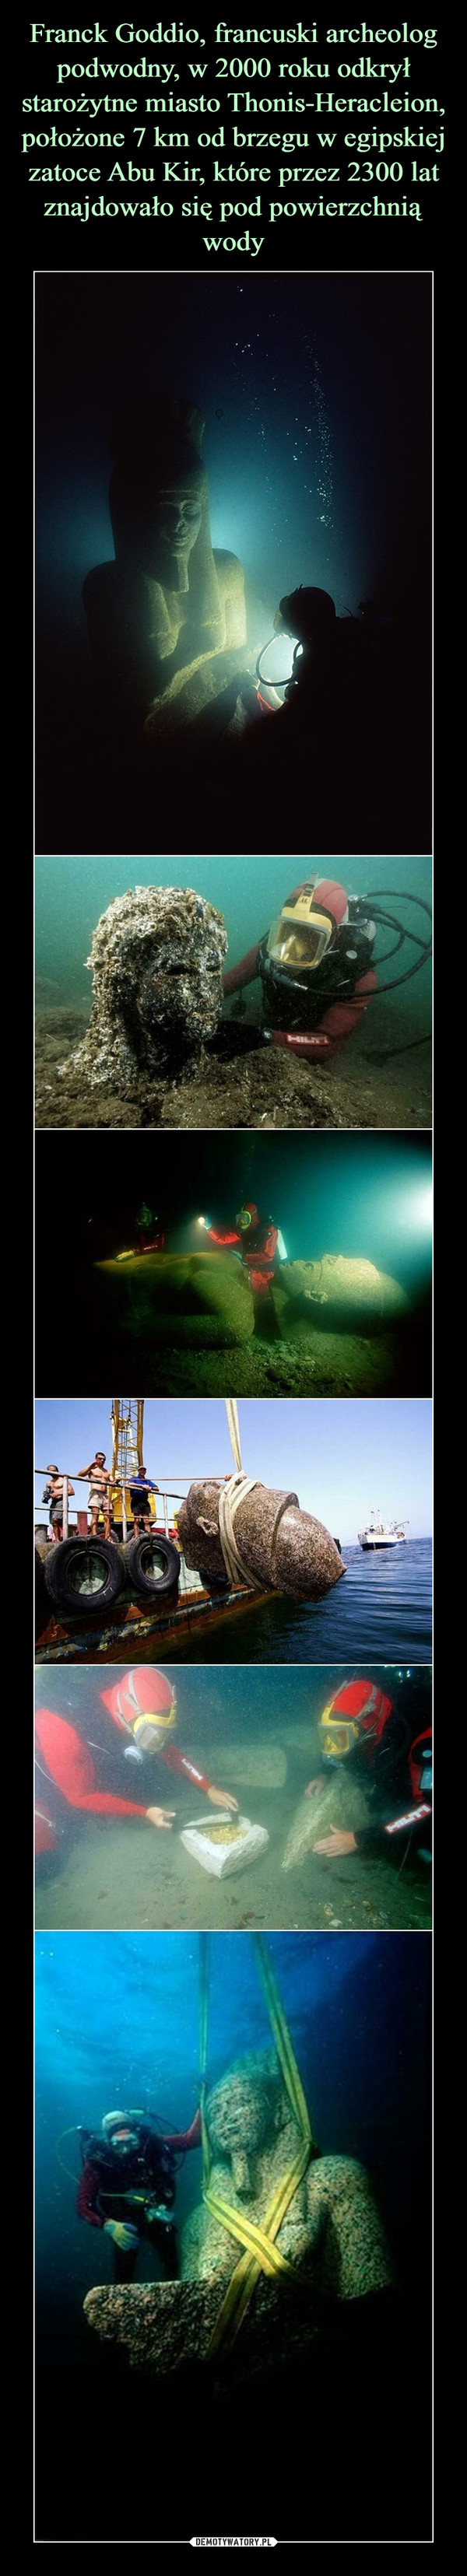 Franck Goddio, francuski archeolog podwodny, w 2000 roku odkrył starożytne miasto Thonis-Heracleion, położone 7 km od brzegu w egipskiej zatoce Abu Kir, które przez 2300 lat znajdowało się pod powierzchnią wody